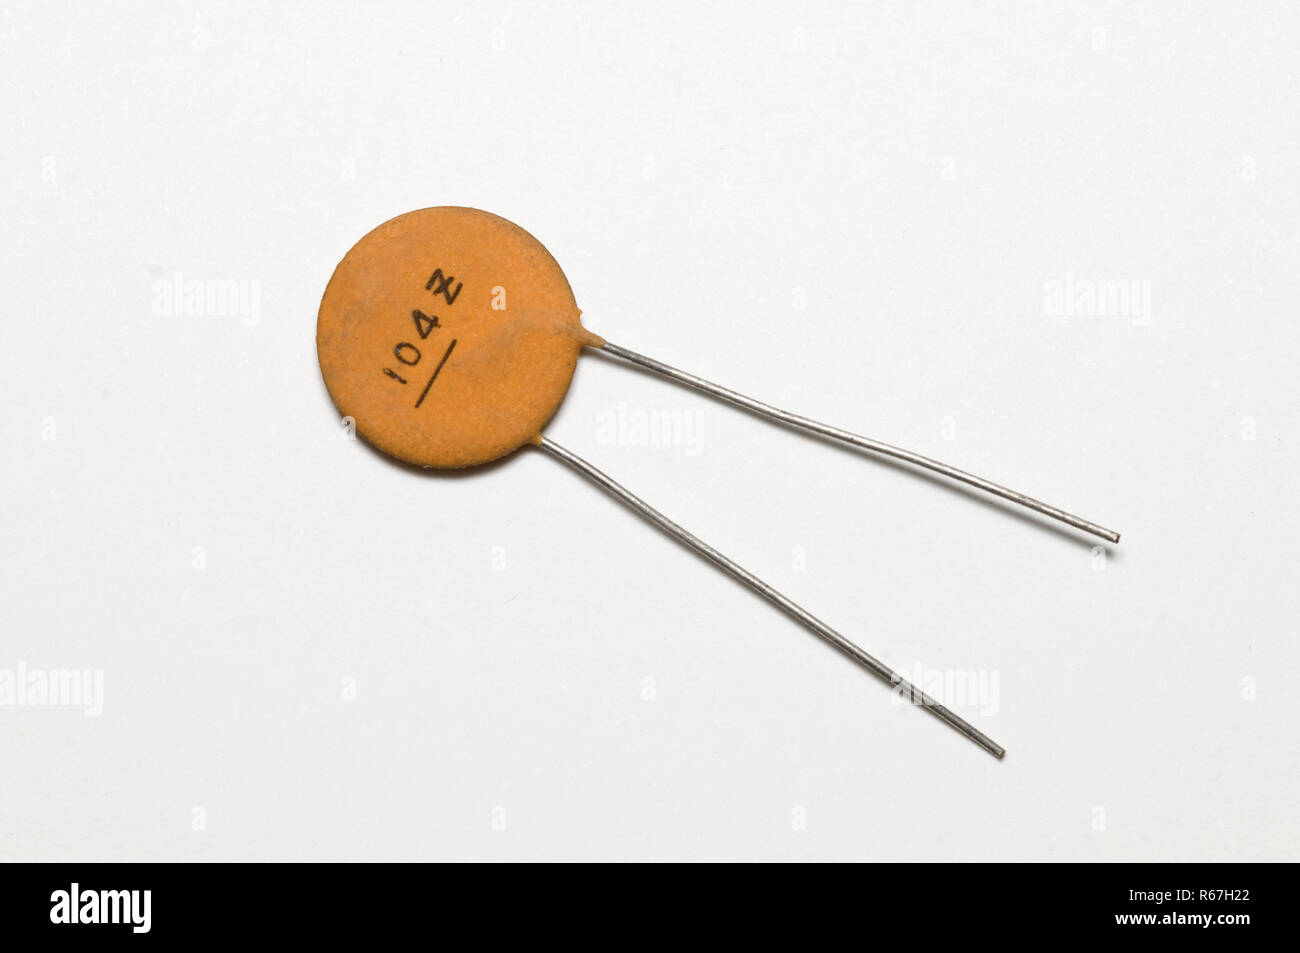 Elektronische Kondensator auf eine weiße Fläche Stockfotografie - Alamy